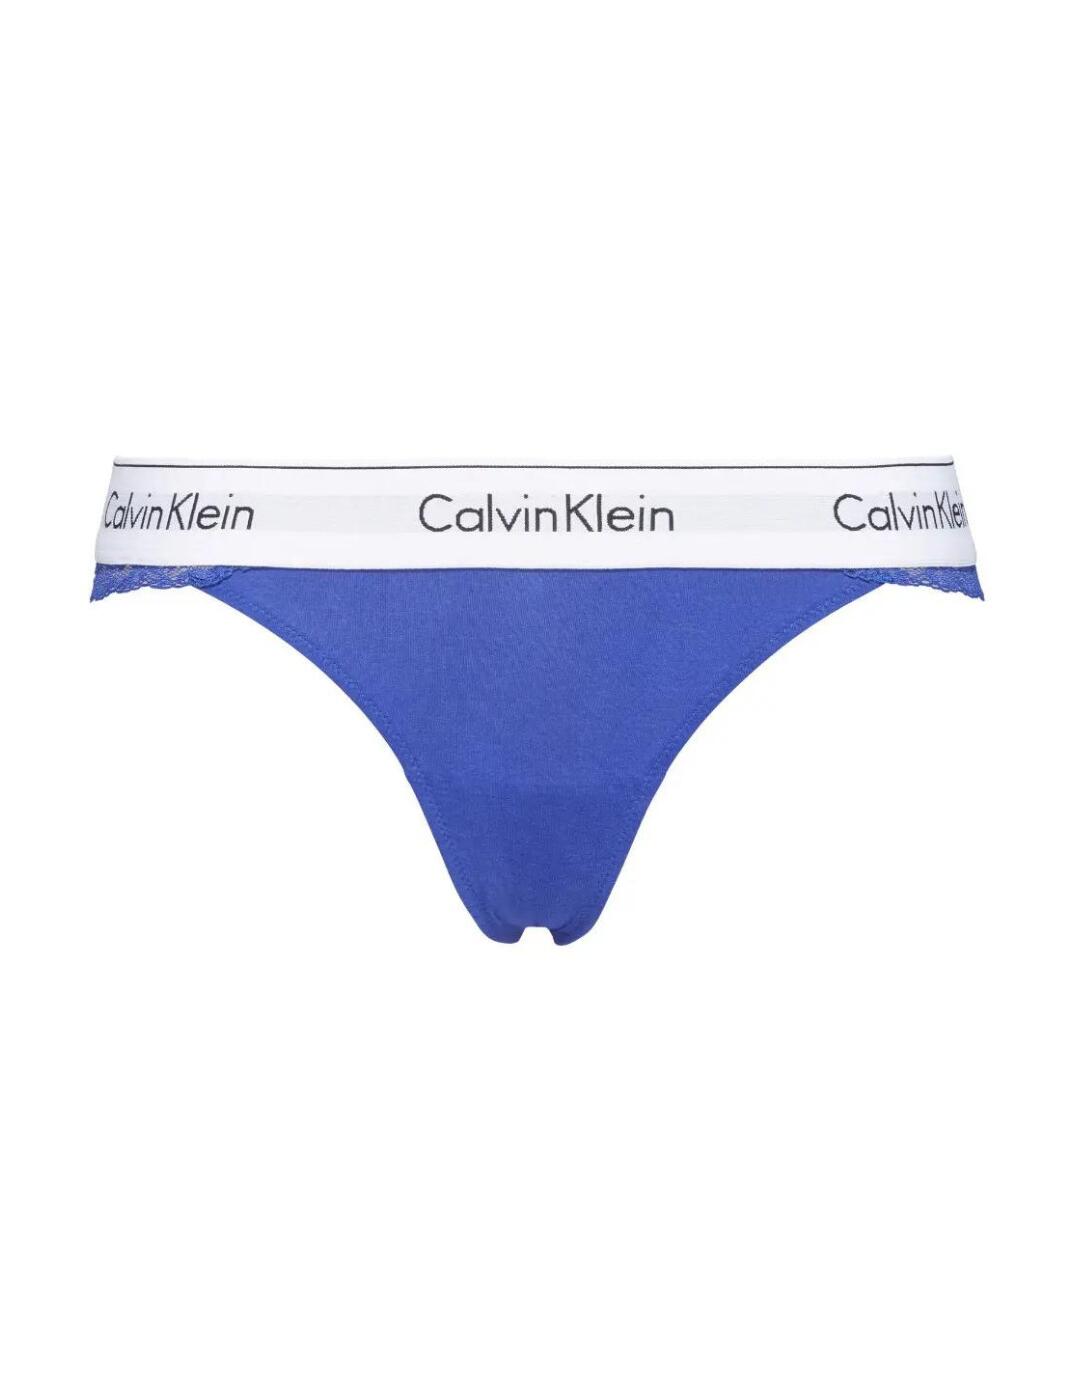 Calvin Klein Carousel Thong - Belle Lingerie